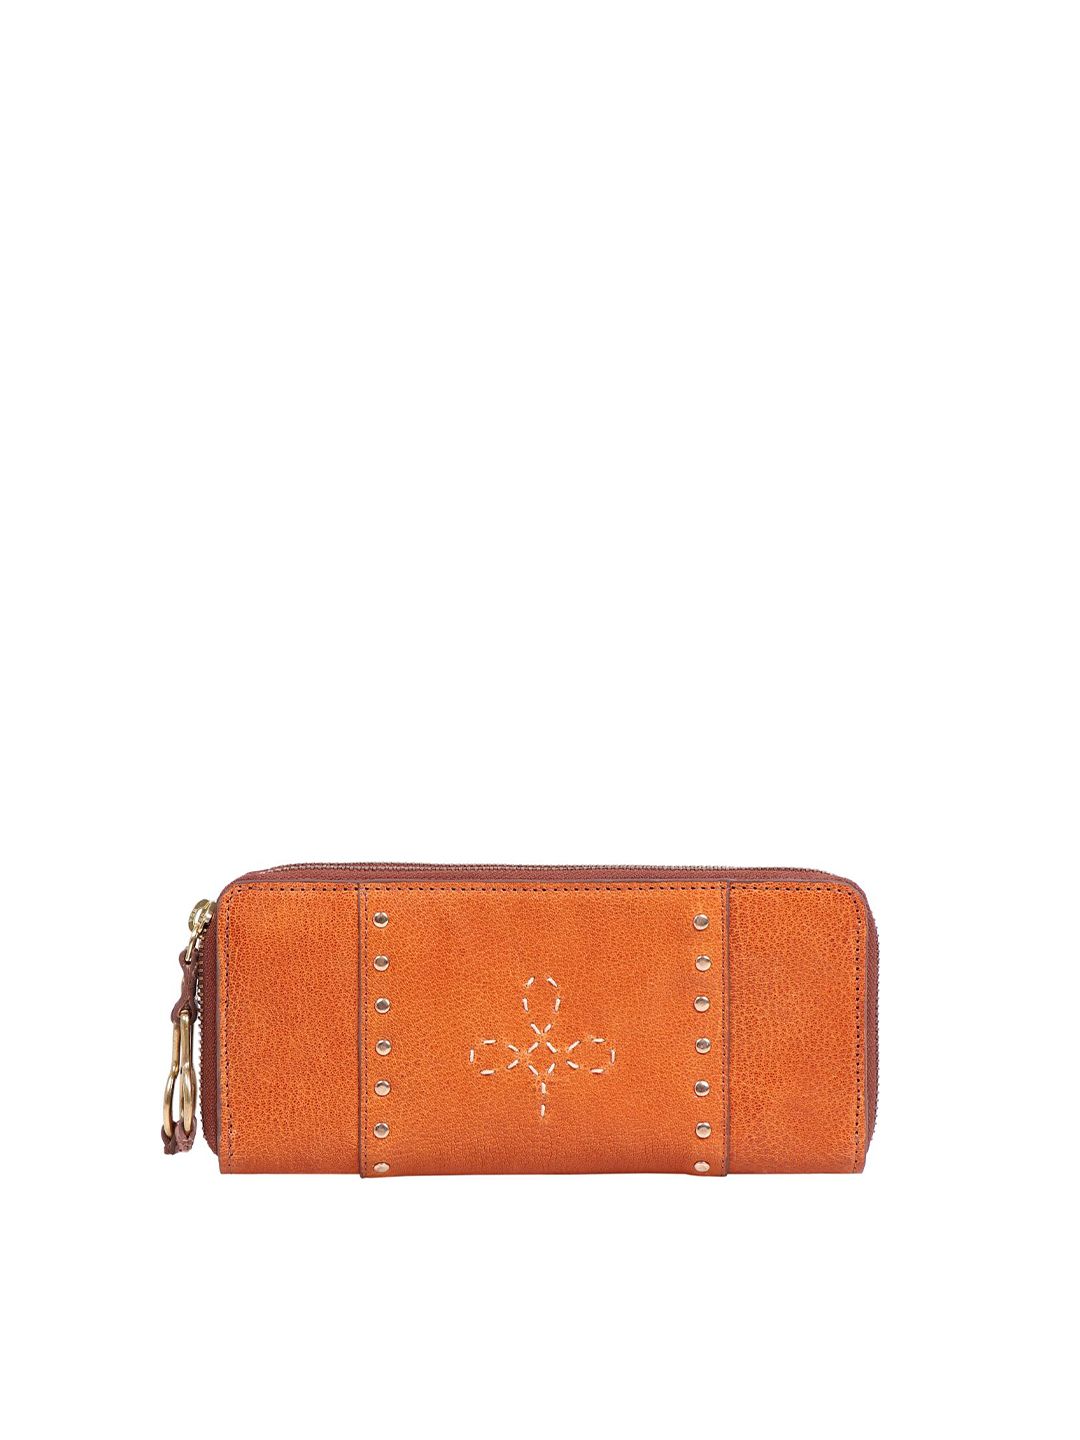 Hidesign Women Orange & White Textured Leather Zip Around Wallet Price in India